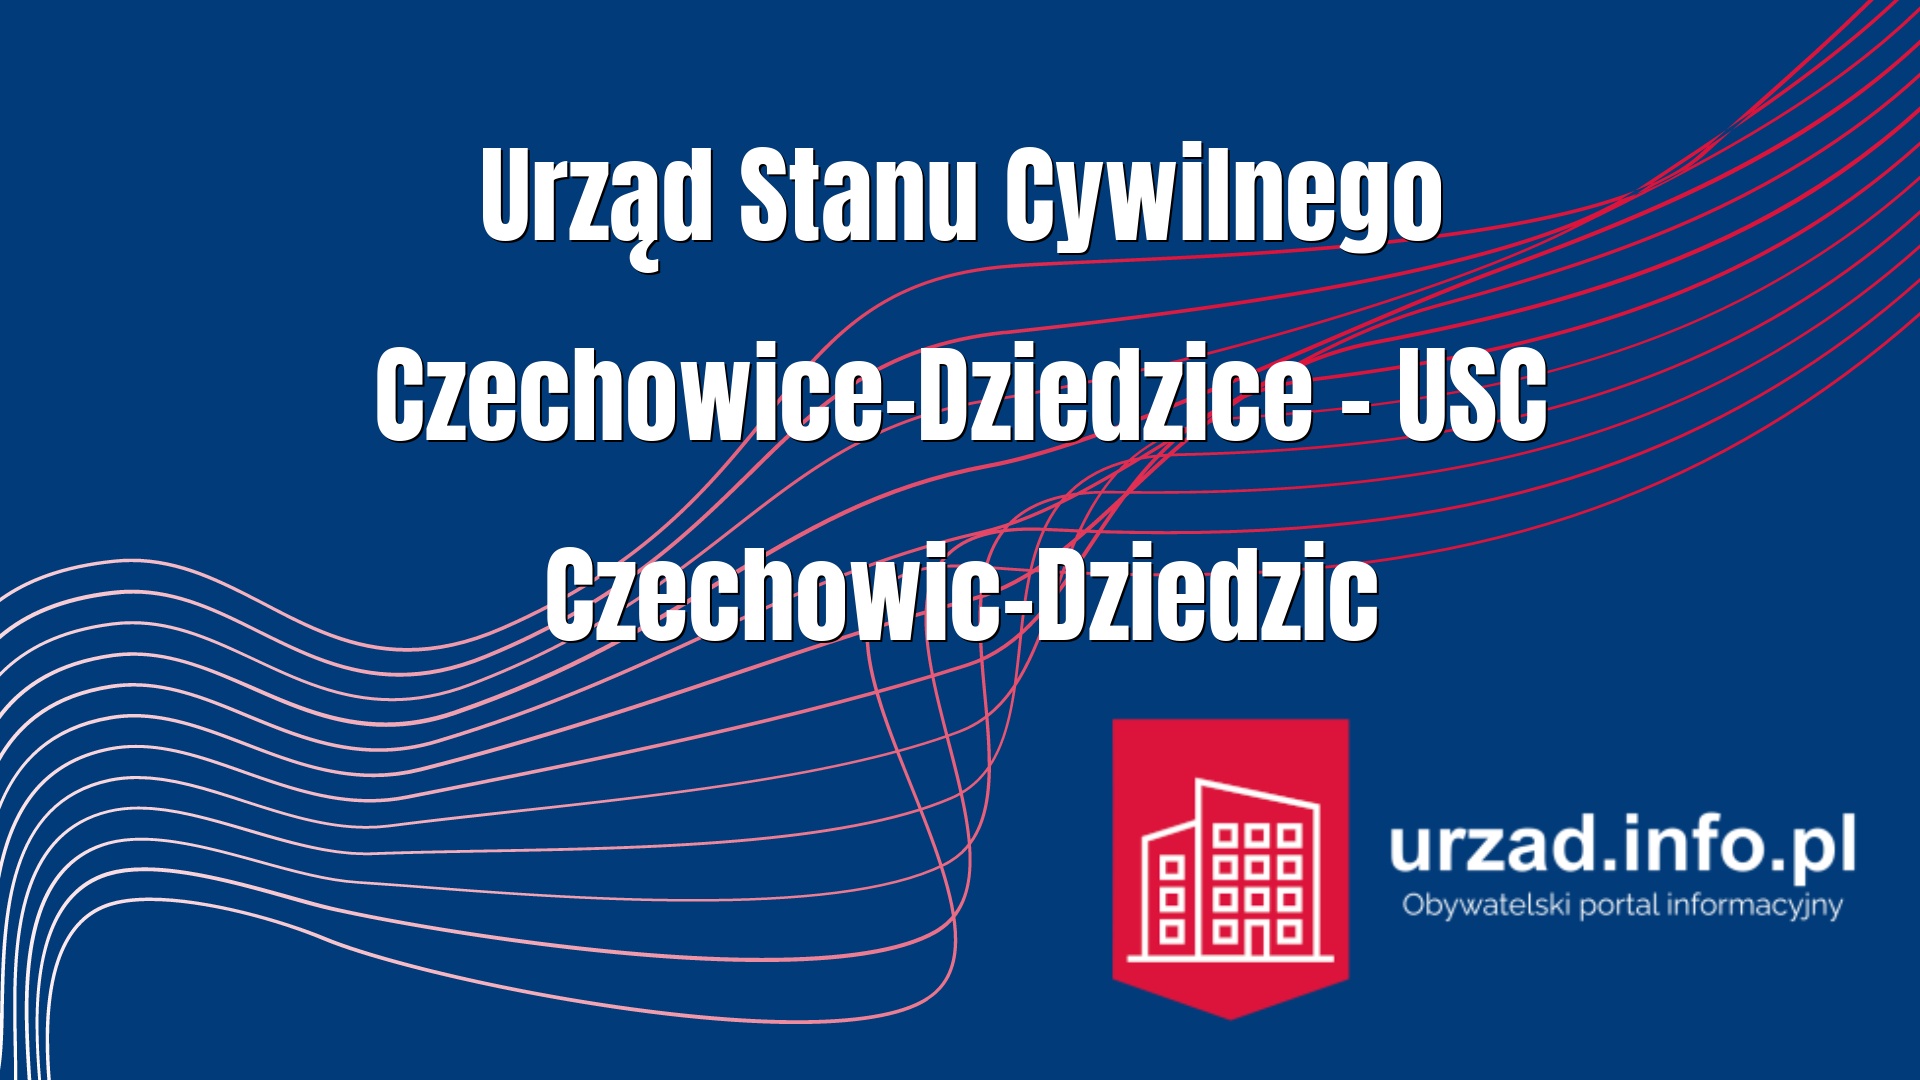 Urząd Stanu Cywilnego Czechowice-Dziedzice – USC Czechowic-Dziedzic